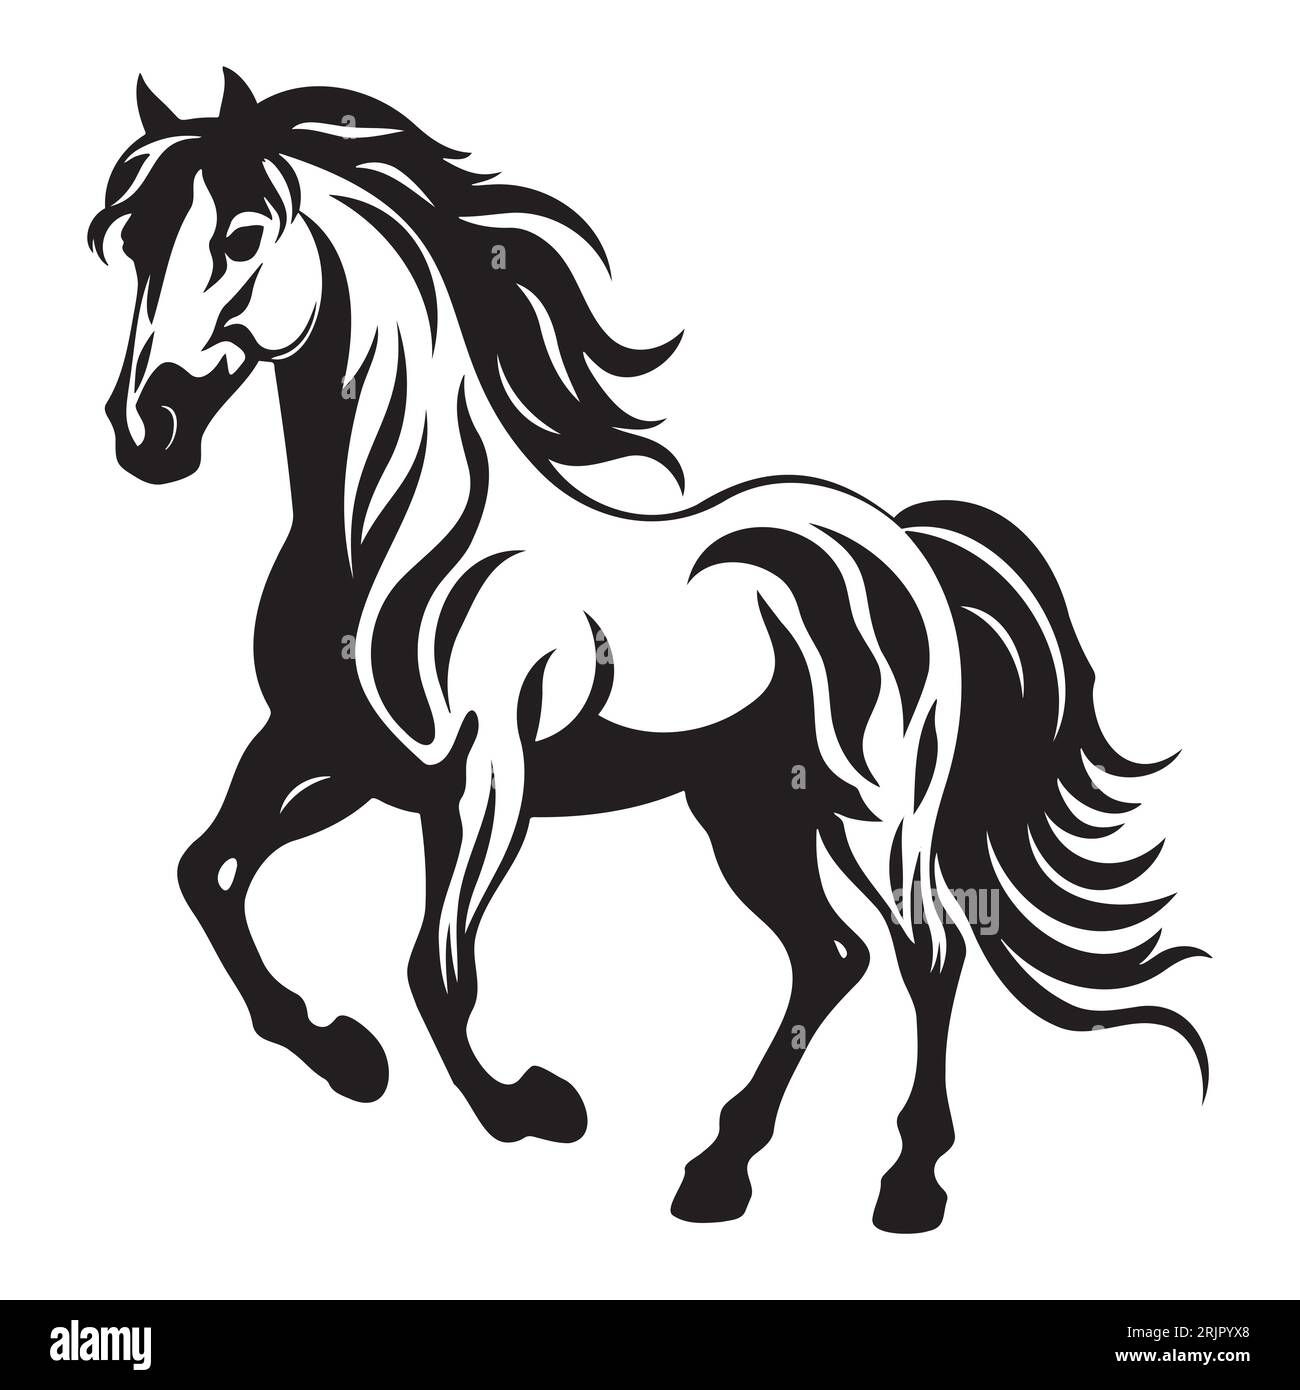 Die Abbildungen und Clipart. Eine schwarz-weiße Silhouette eines Pferdes Stock Vektor